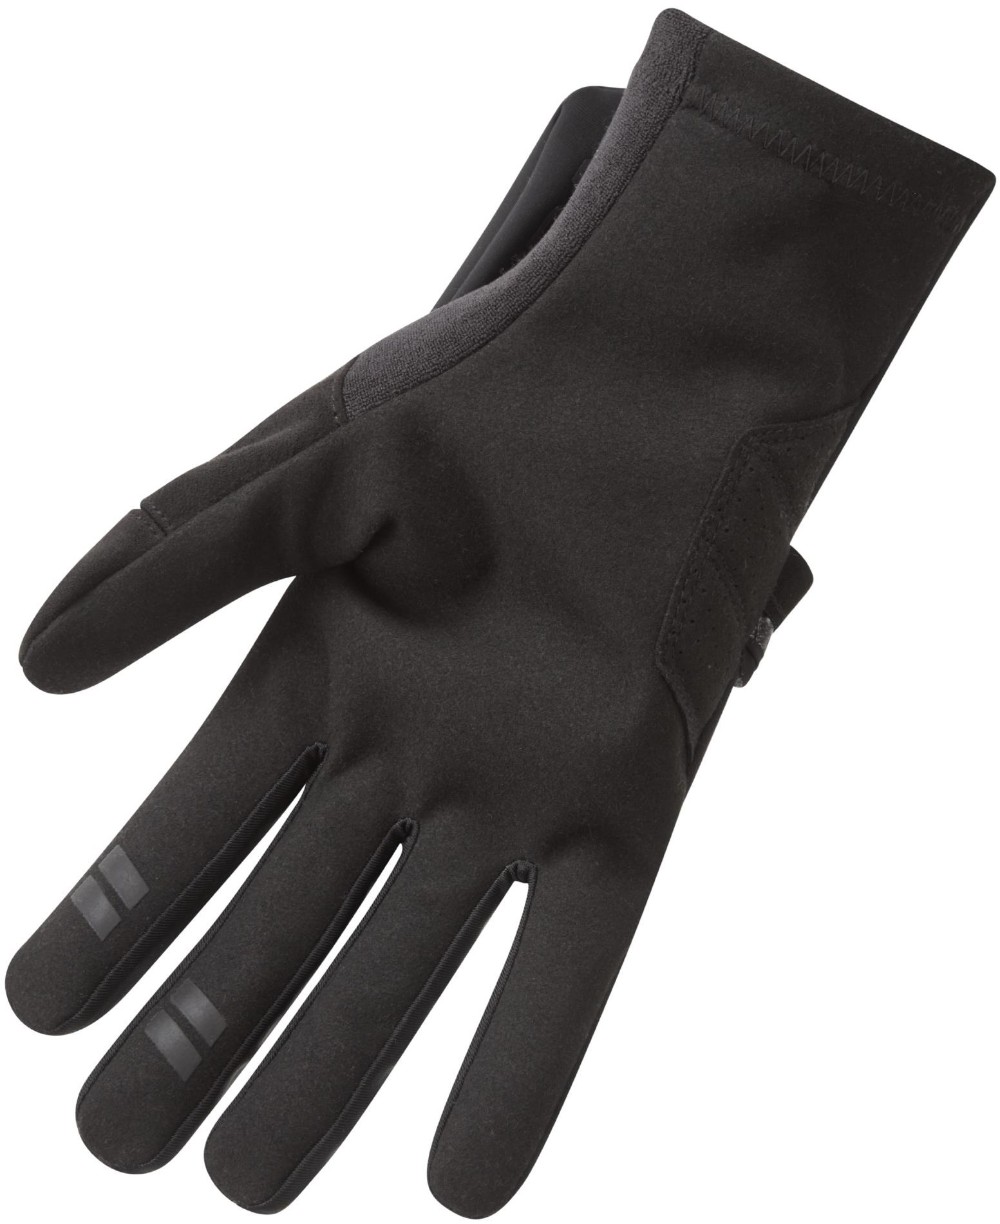 All Roads Adapt Long Finger Gloves image 2